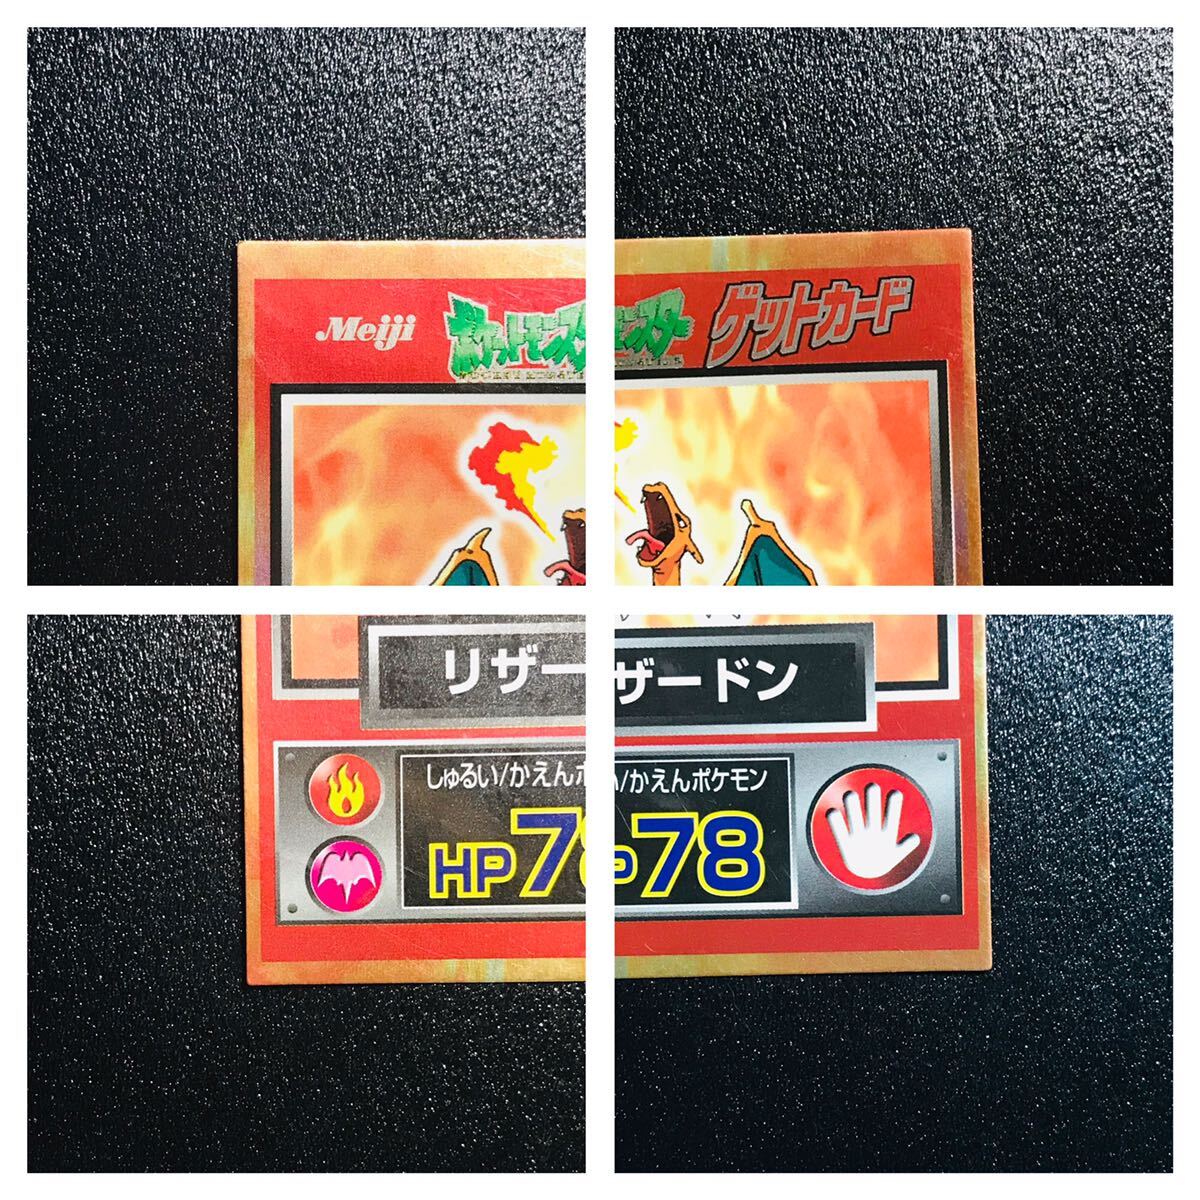 ポケモン カードダス 明治 ゲットカード 食玩 御三家 フシギバナ リザードン カメックス Pokemon carddass Get card Meiji Charizard ⑦_画像8